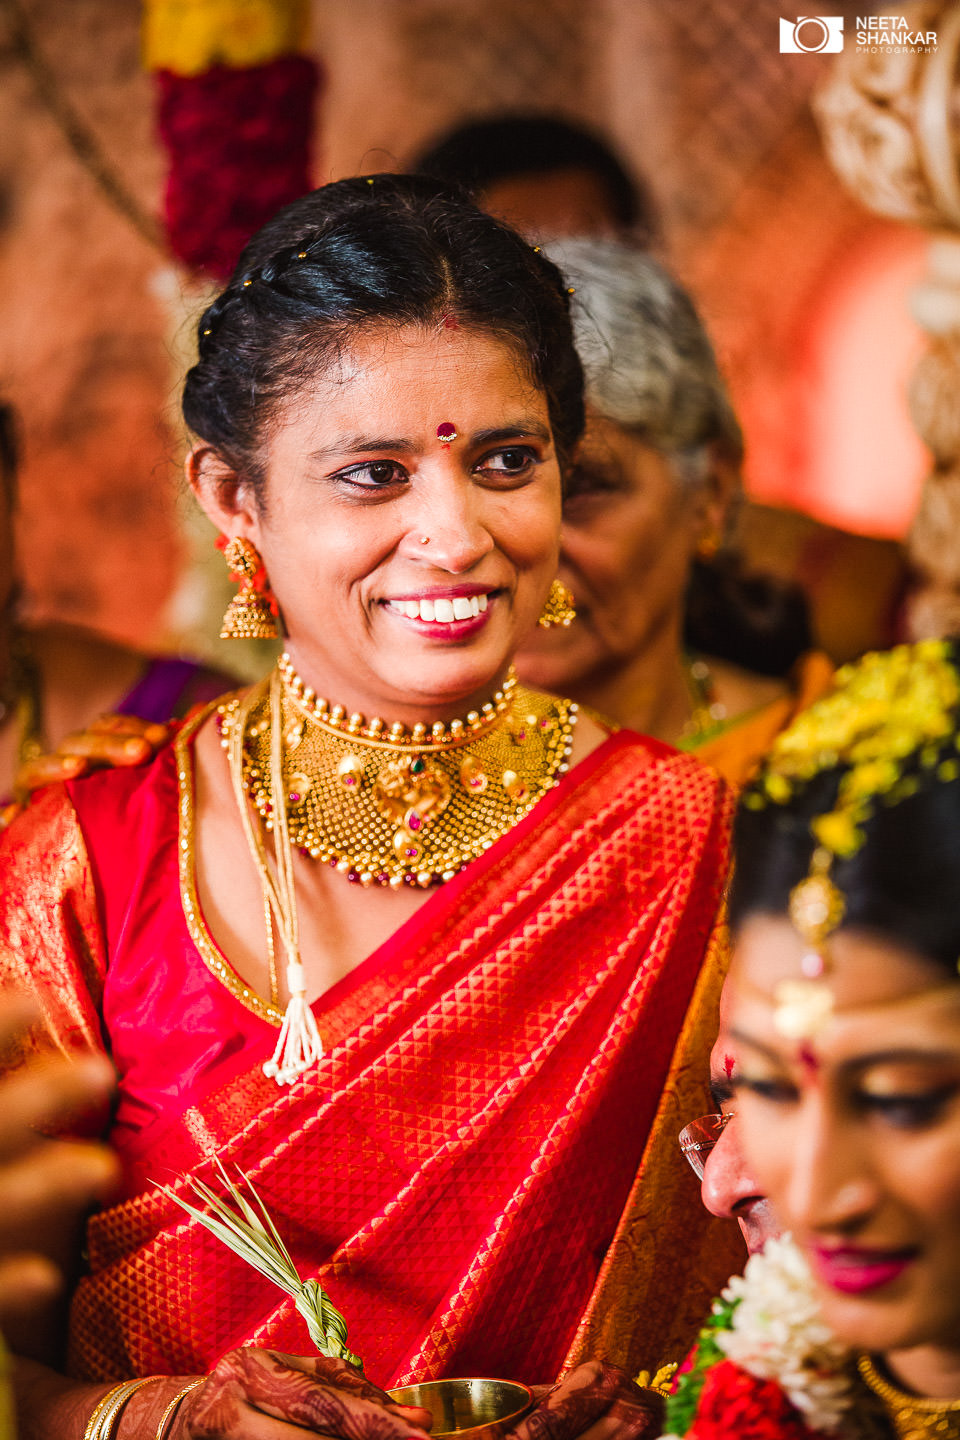 Neeta-Shankar-MLR-Convention-Hall-Taarini-Weddings-Telugu-Tamil-Candid-Wedding-Photography